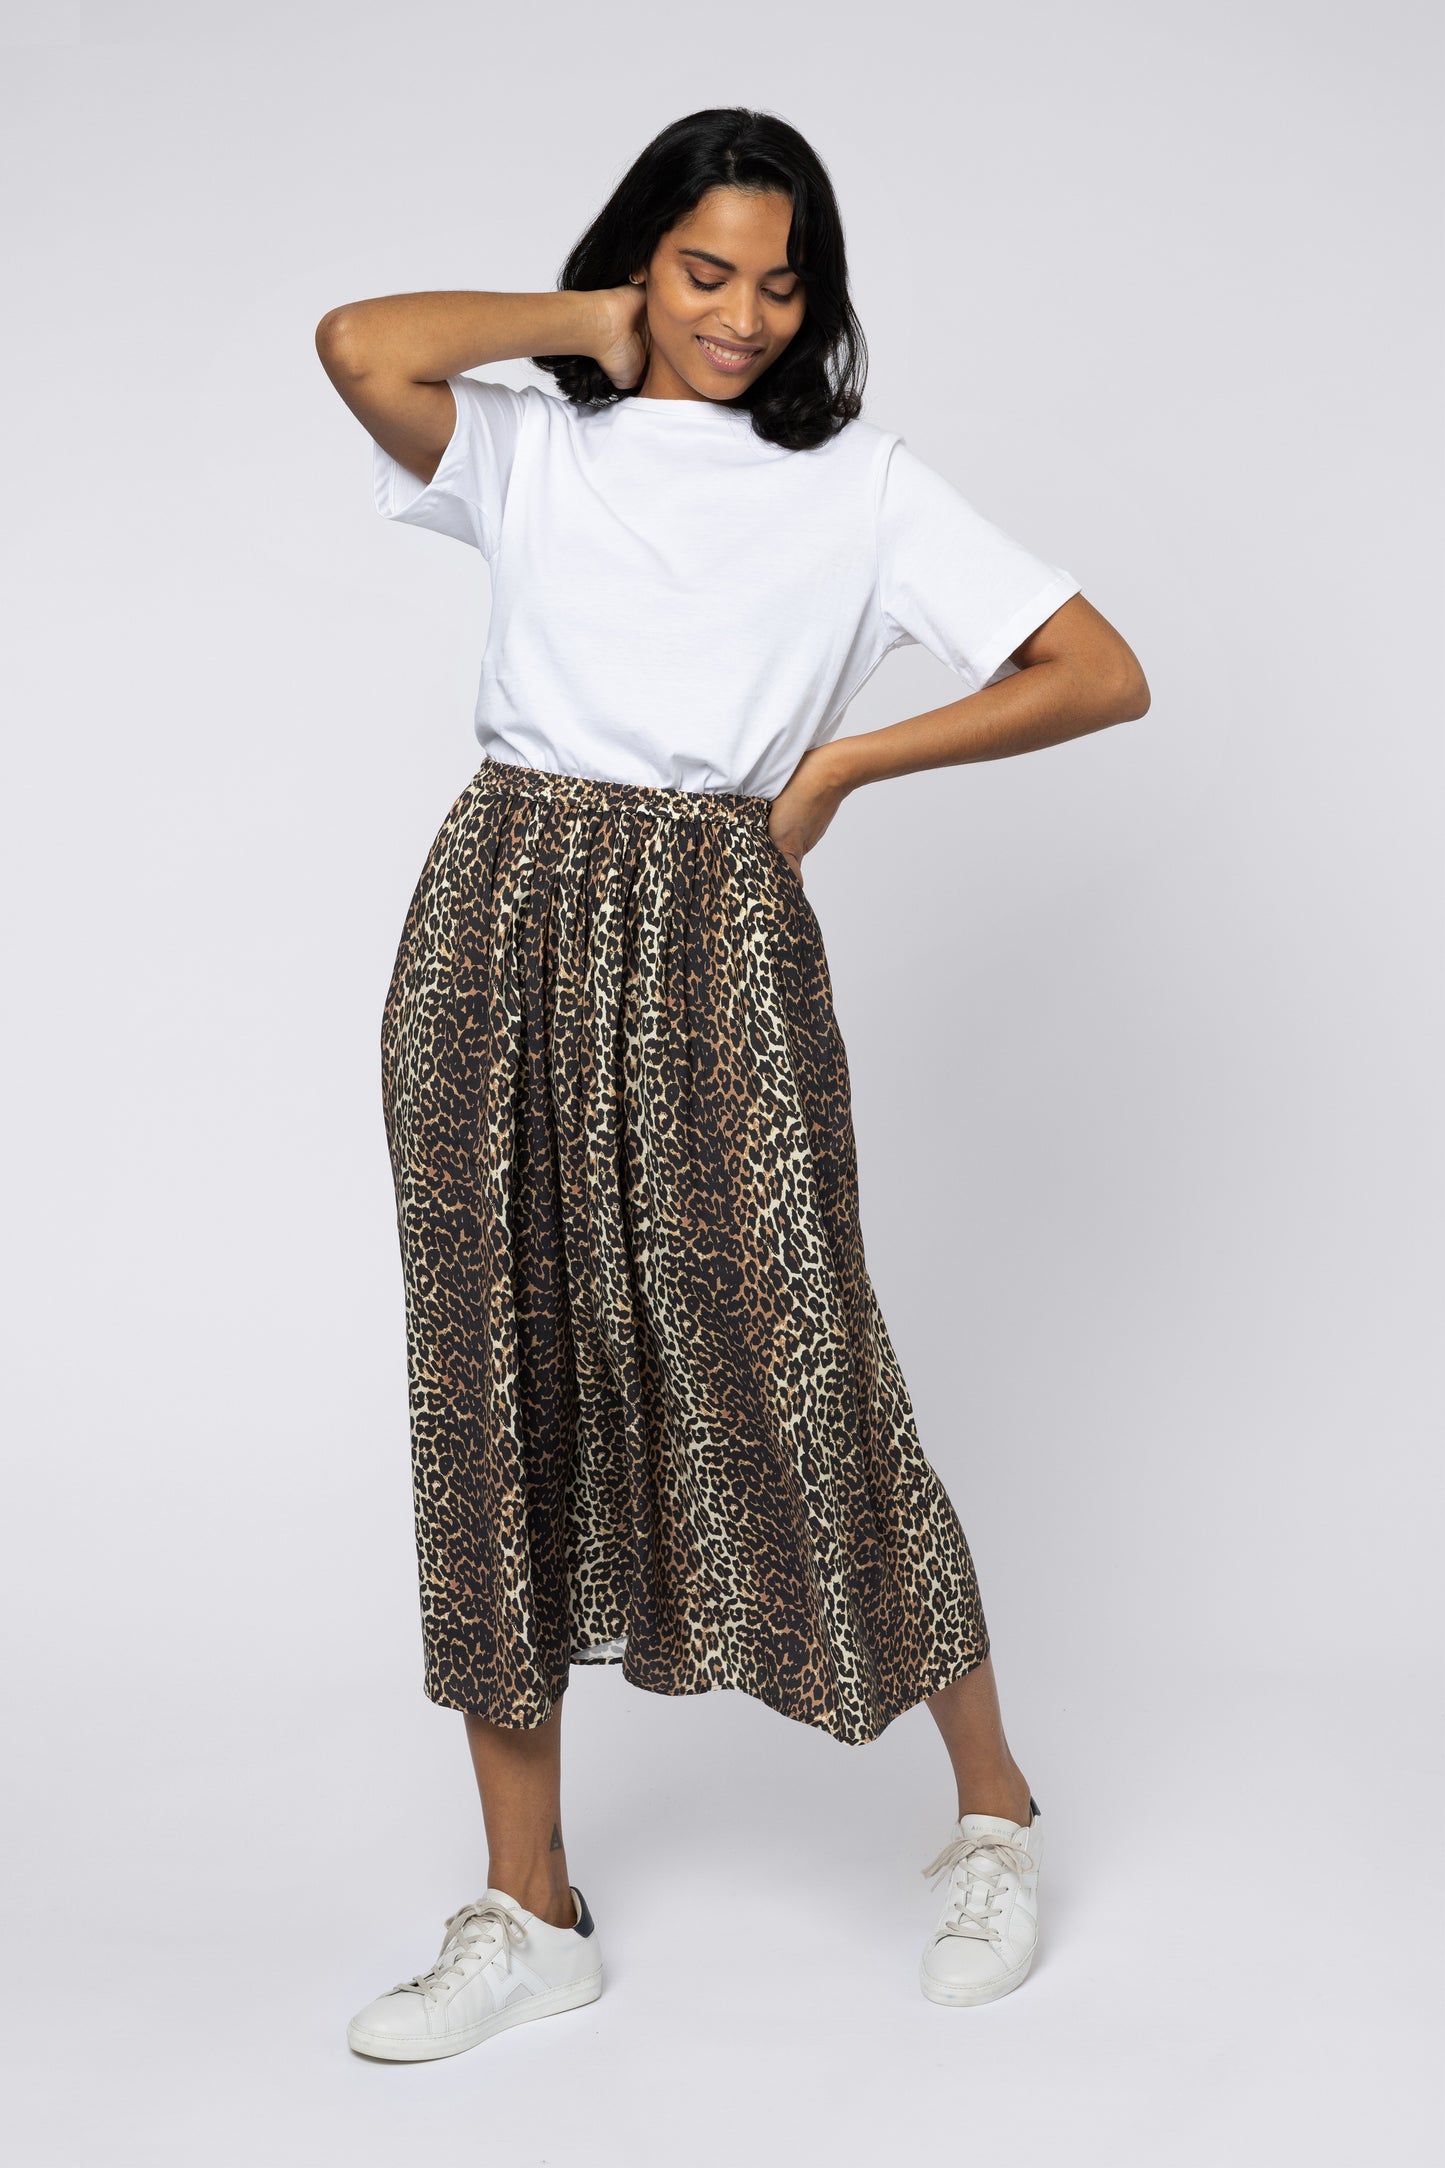 saffy leopard print skirt midi skirt neutral and black skirt leopard print trend leopard print skirt skirts for women eleven loves ellen loves 11 loves